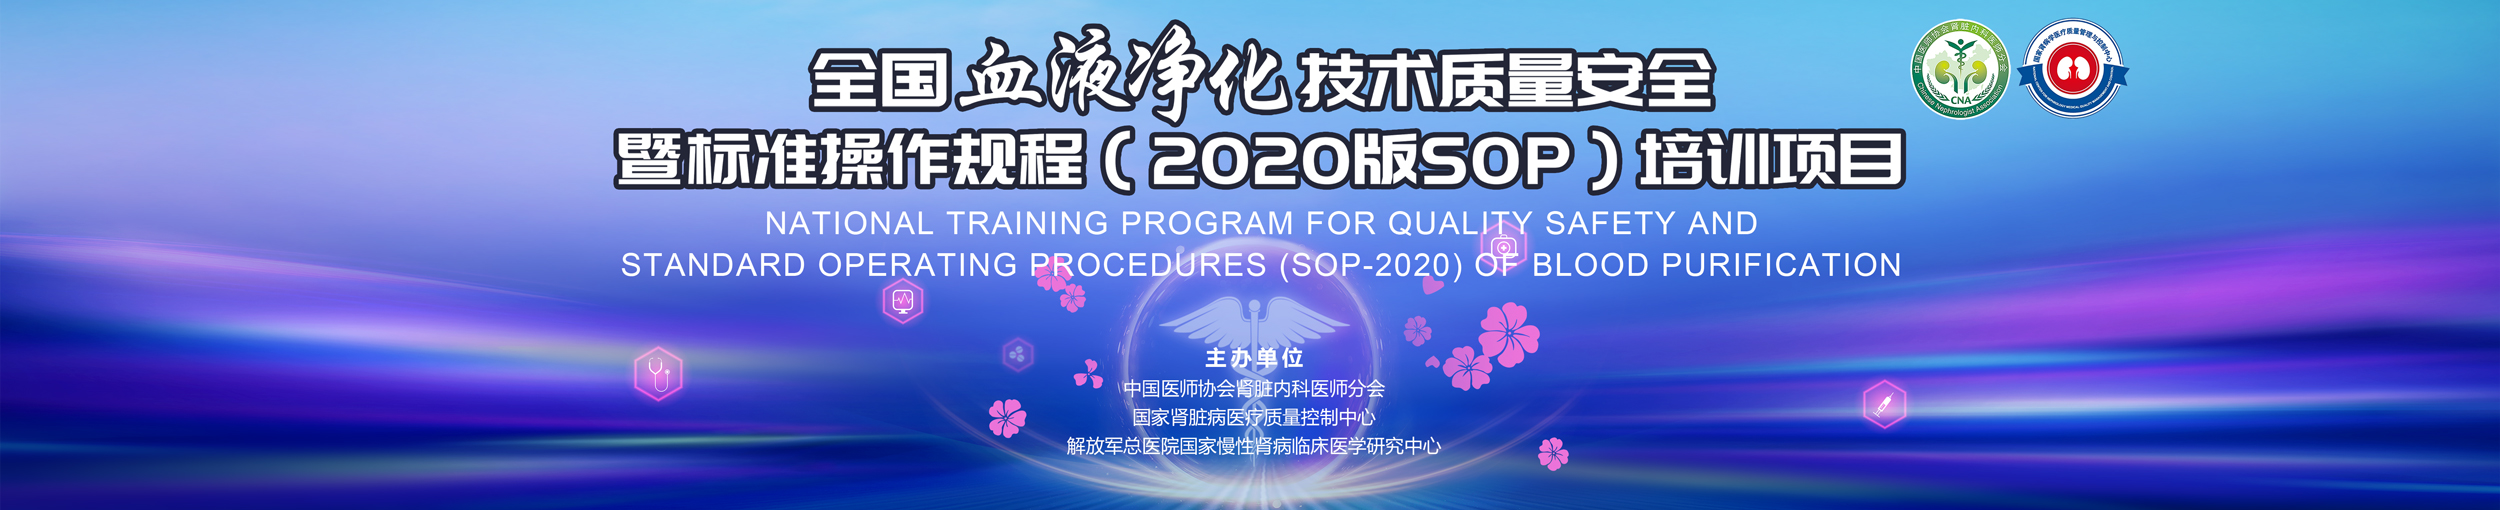 全国血液净化SOP培训项目-重庆站